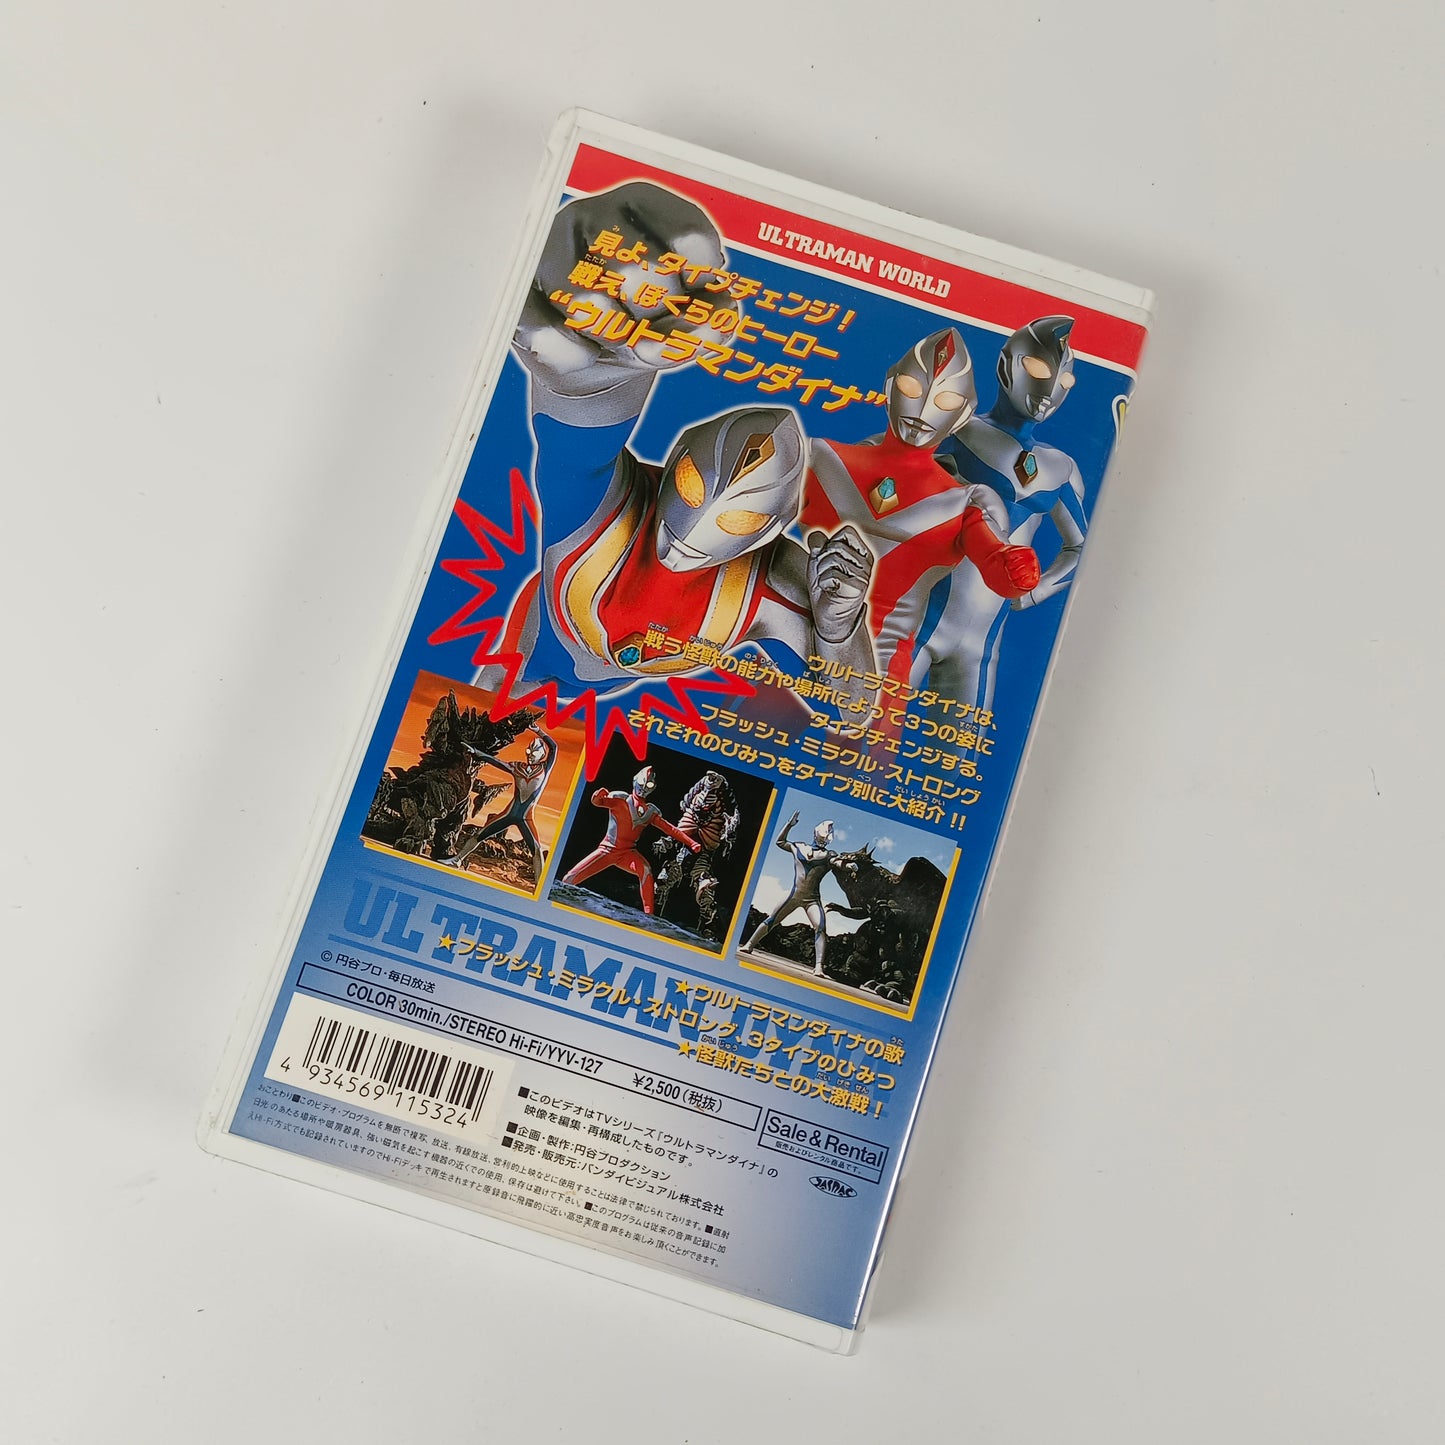 Ultraman Daina : Miyo ! Triple Change